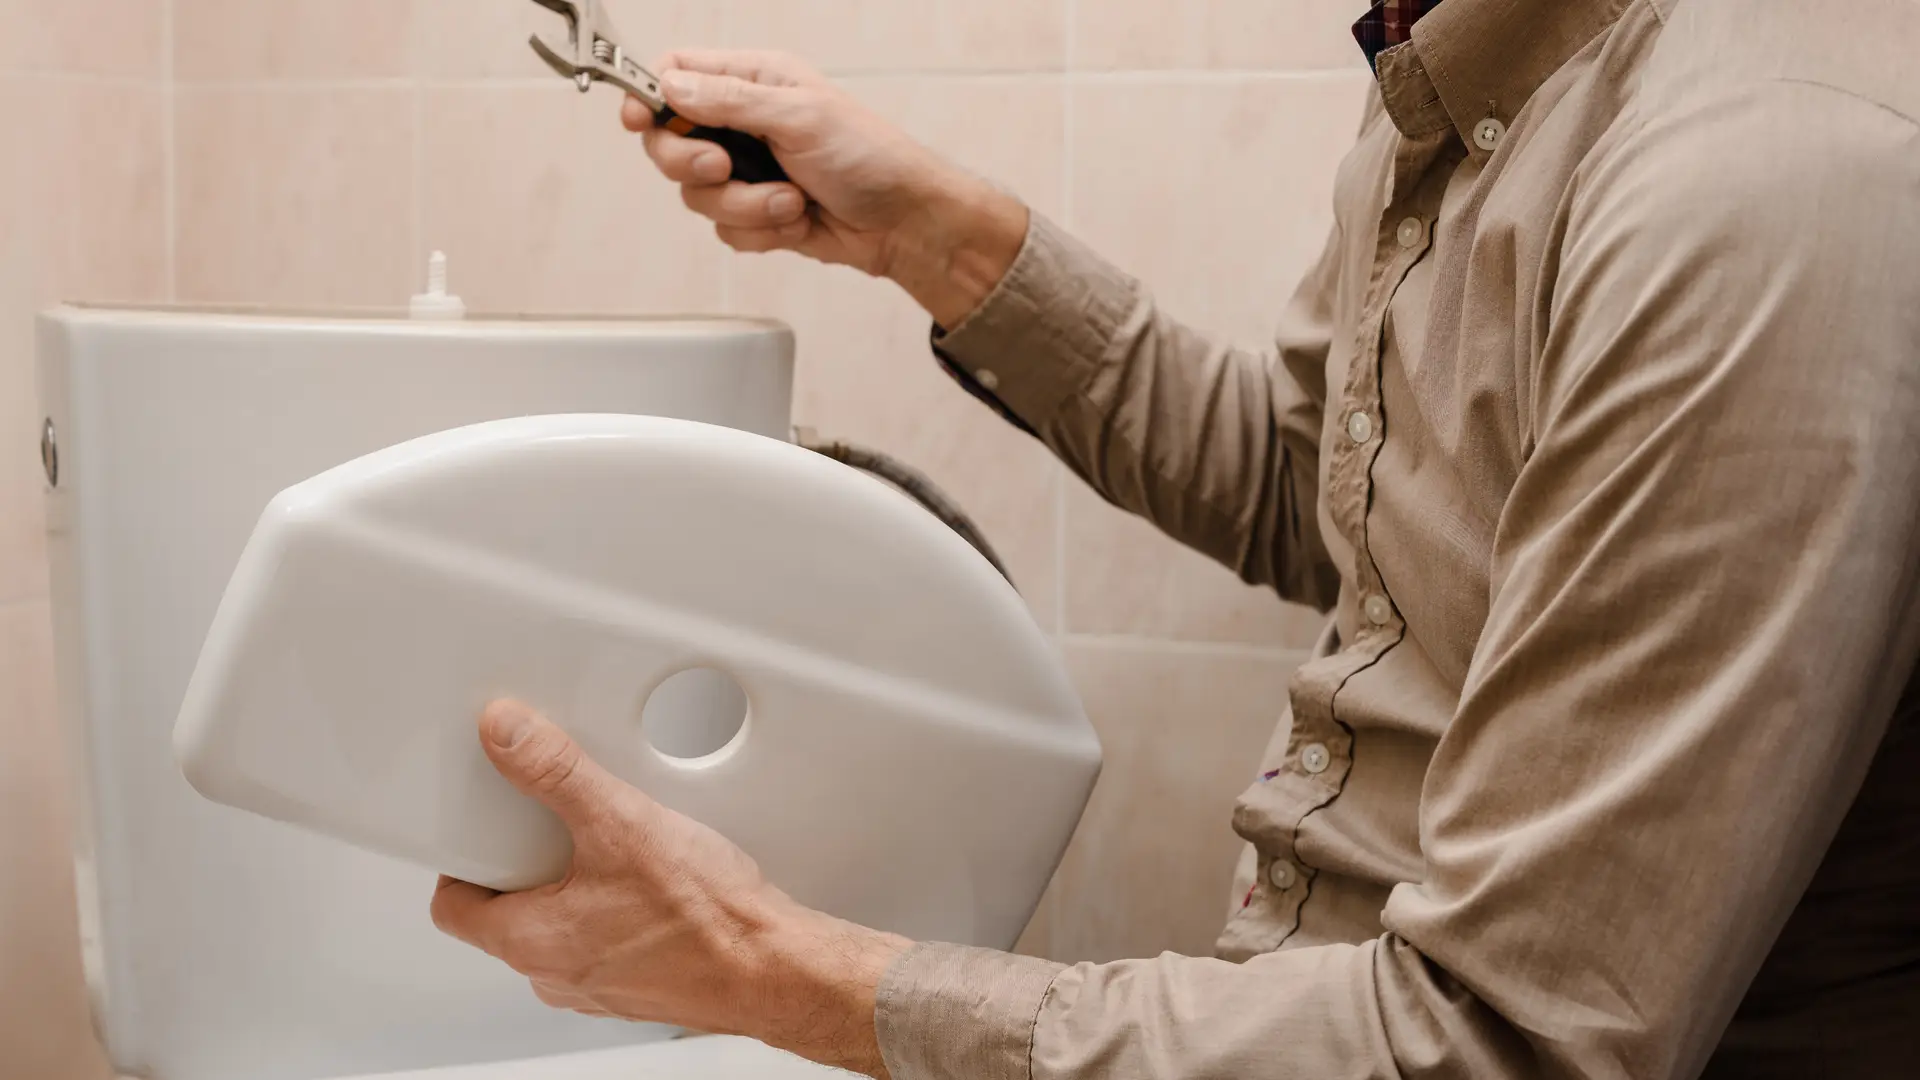 Un empleado arreglando el inodoro de un cliente que tiene un seguro del hogar que cubre ese tipo de arreglos